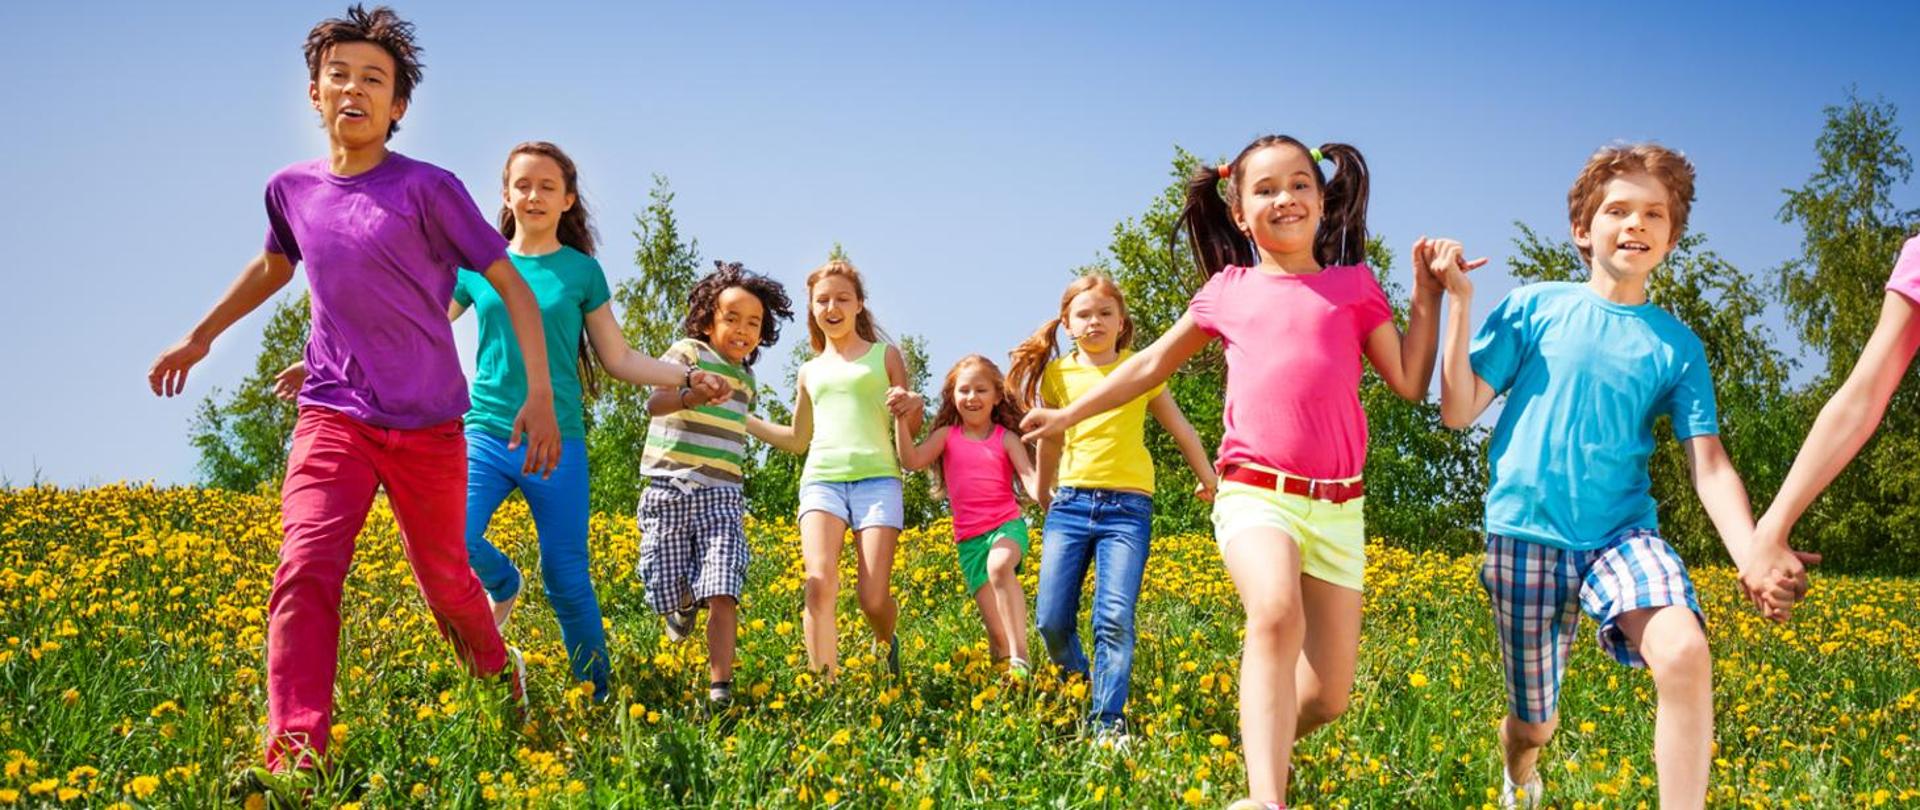 Łąka. Na łące ośmioro biegnących dzieci w kolorowych ubraniach. Dzieci trzymają się za ręce.